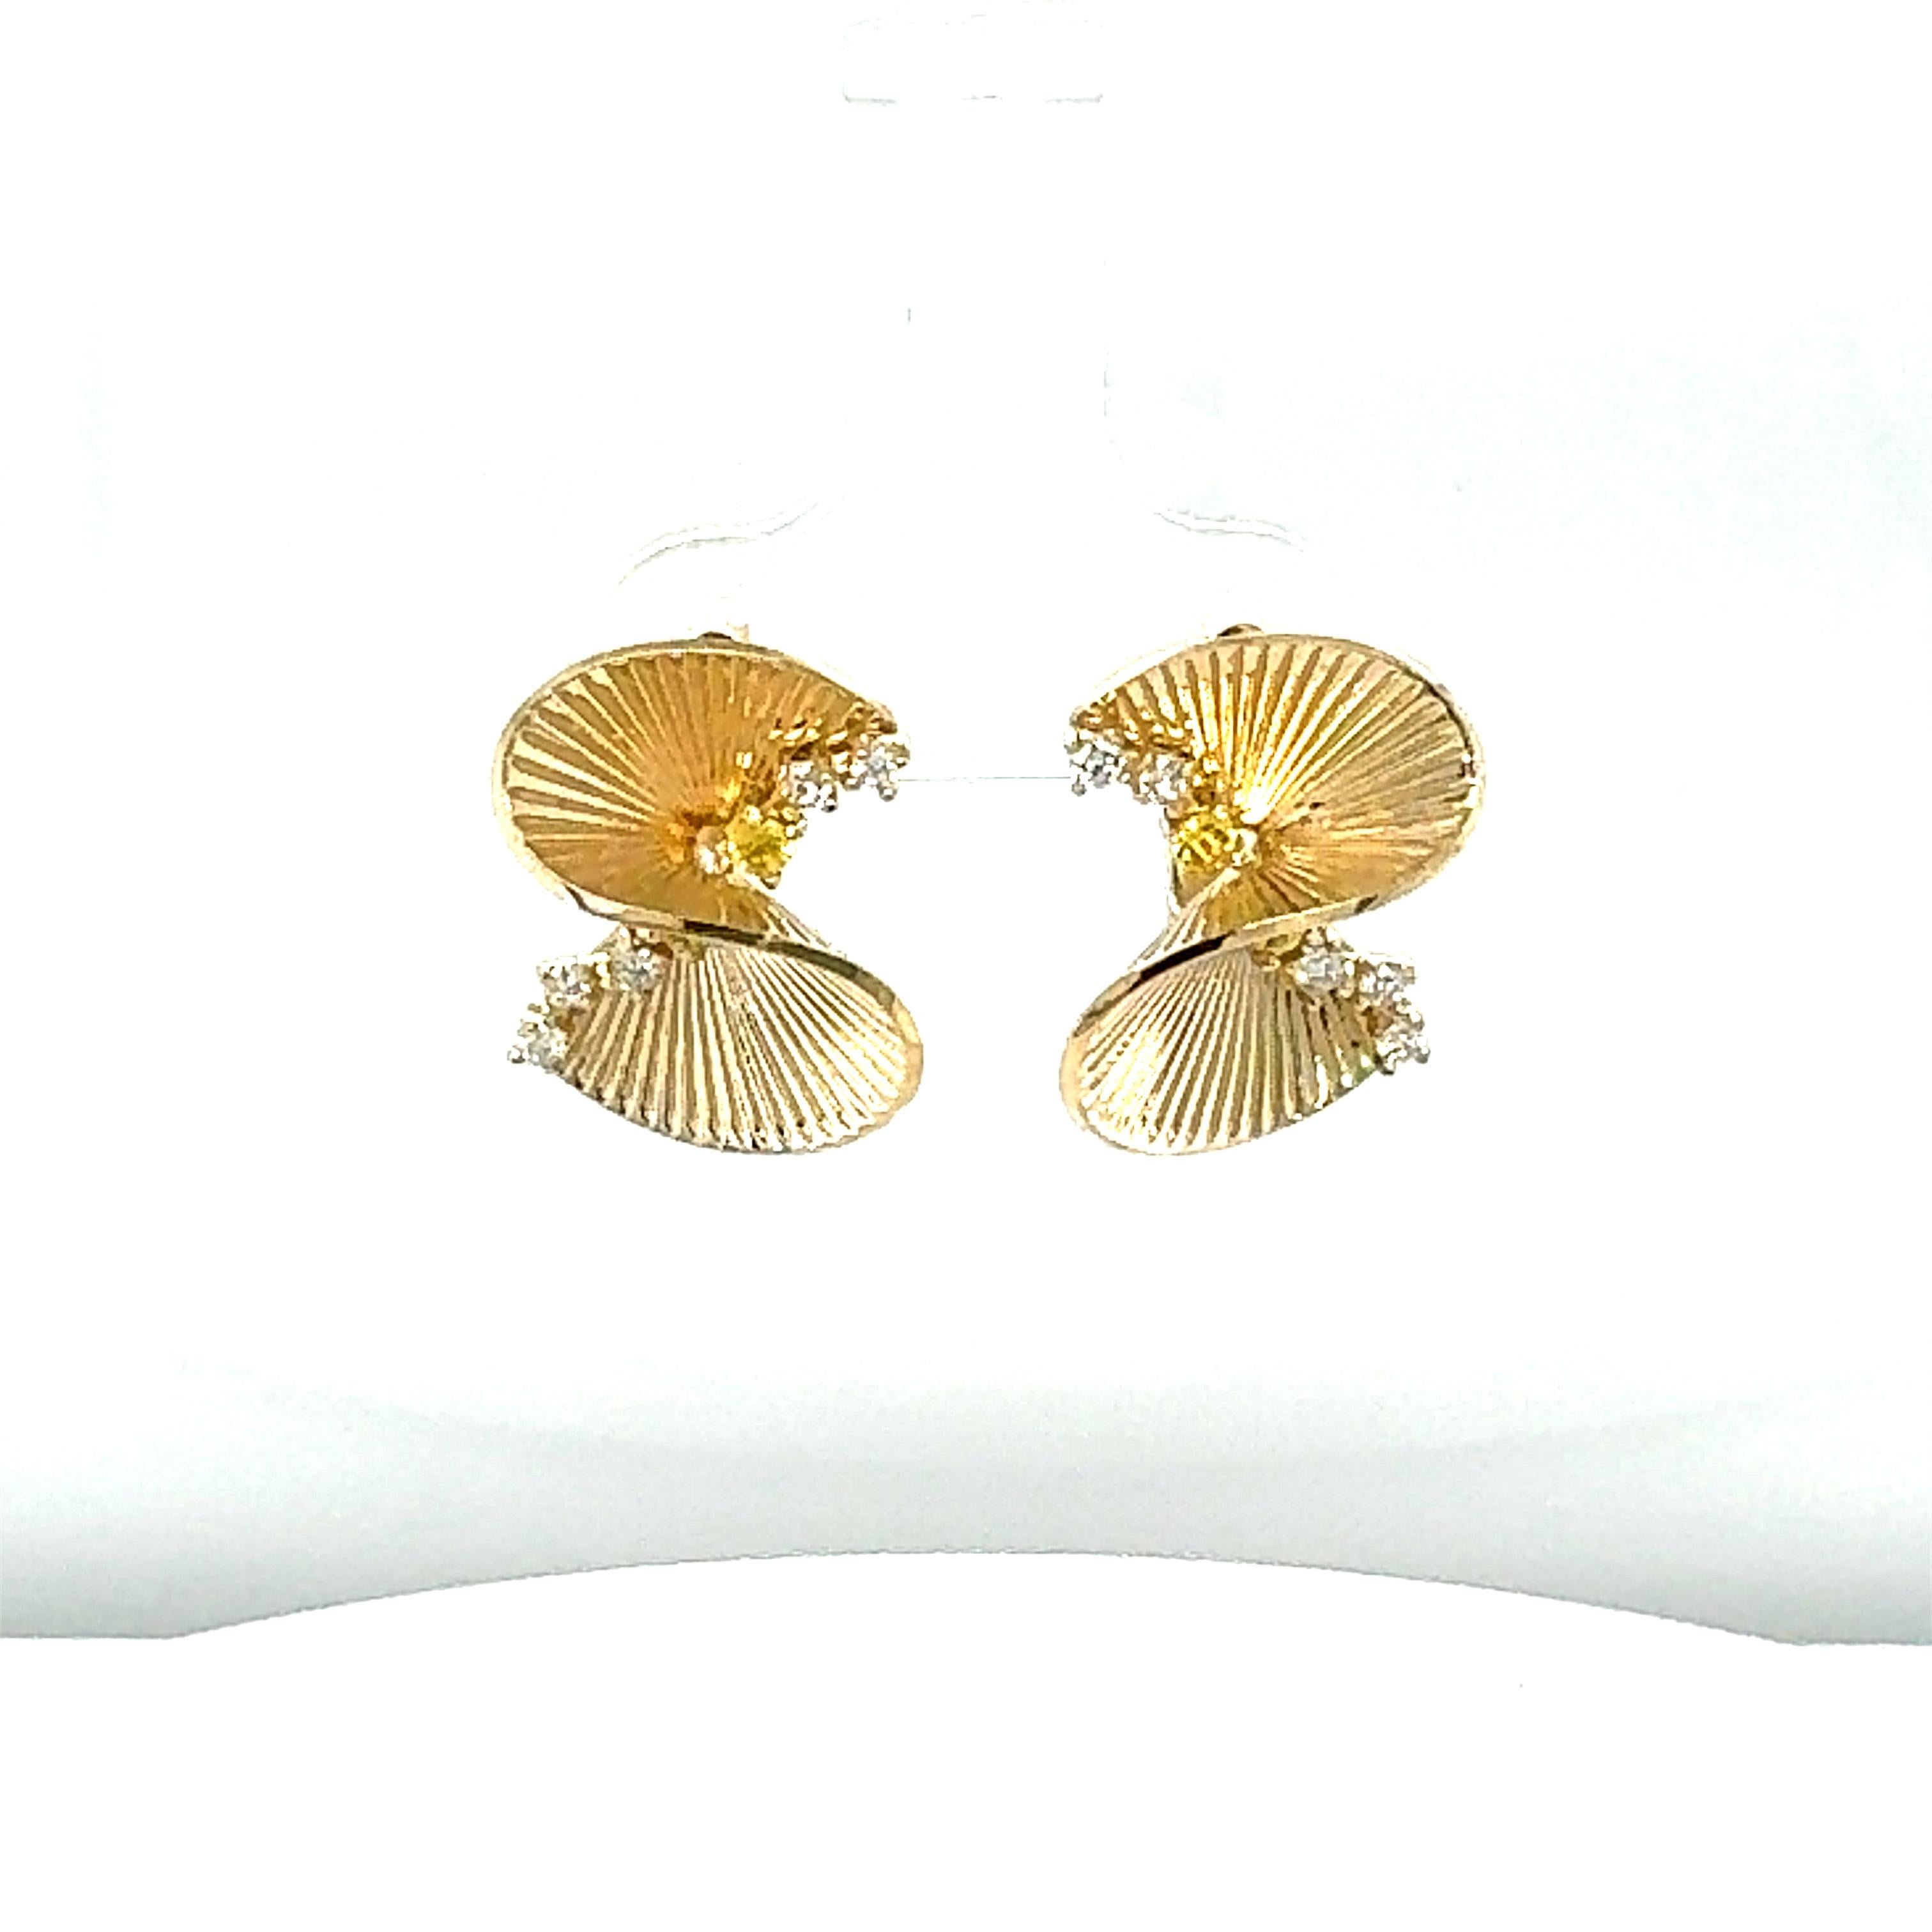 0,34 Karat Diamant Gelbgold Art Deco inspirierte Ohrringe

Diese filigranen Ohrringe mit kompliziertem Design sind eine Bereicherung für jede Garderobe! Diese Ohrringe sind von der Art-Deco-Ära inspiriert. 
Die Ohrringe haben 10 Diamanten im